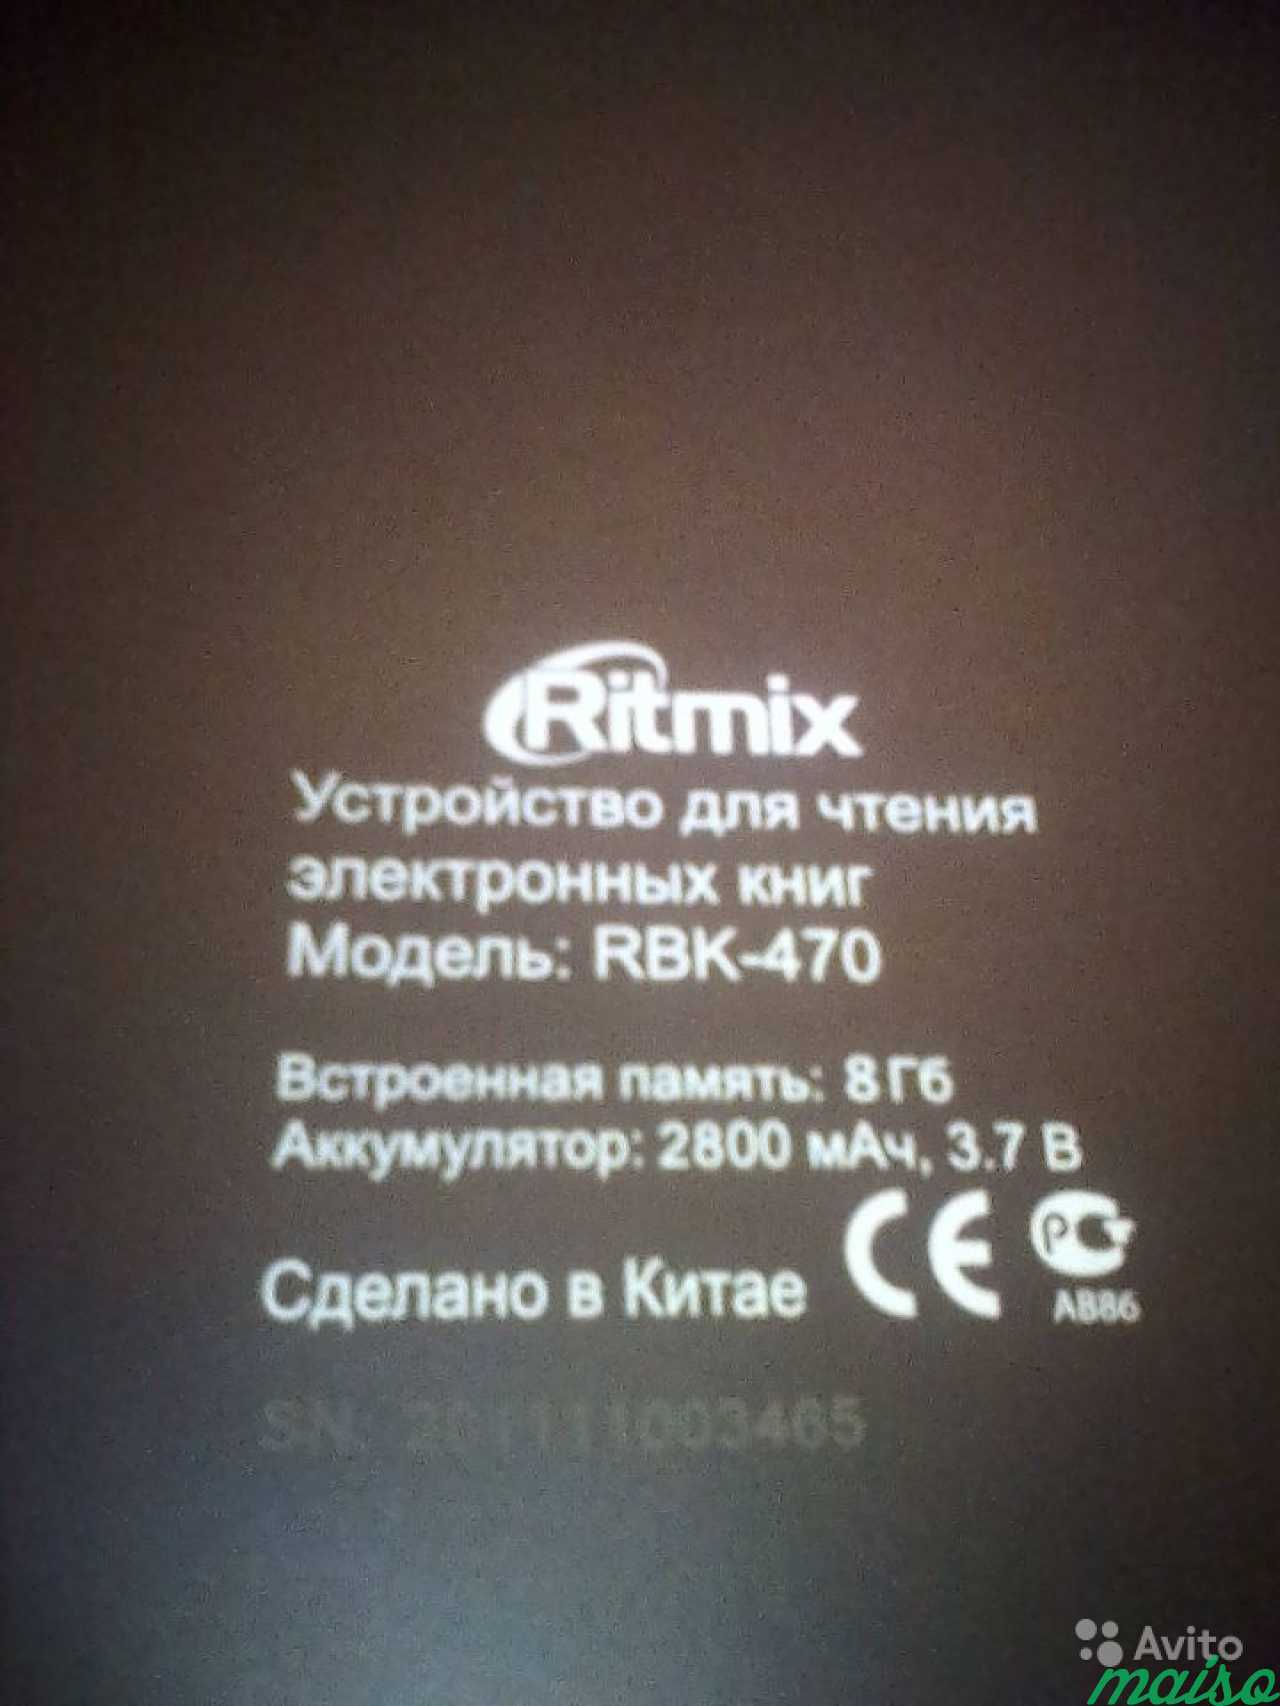 Читалка Ritmix 8 дюймов в Санкт-Петербурге. Фото 2